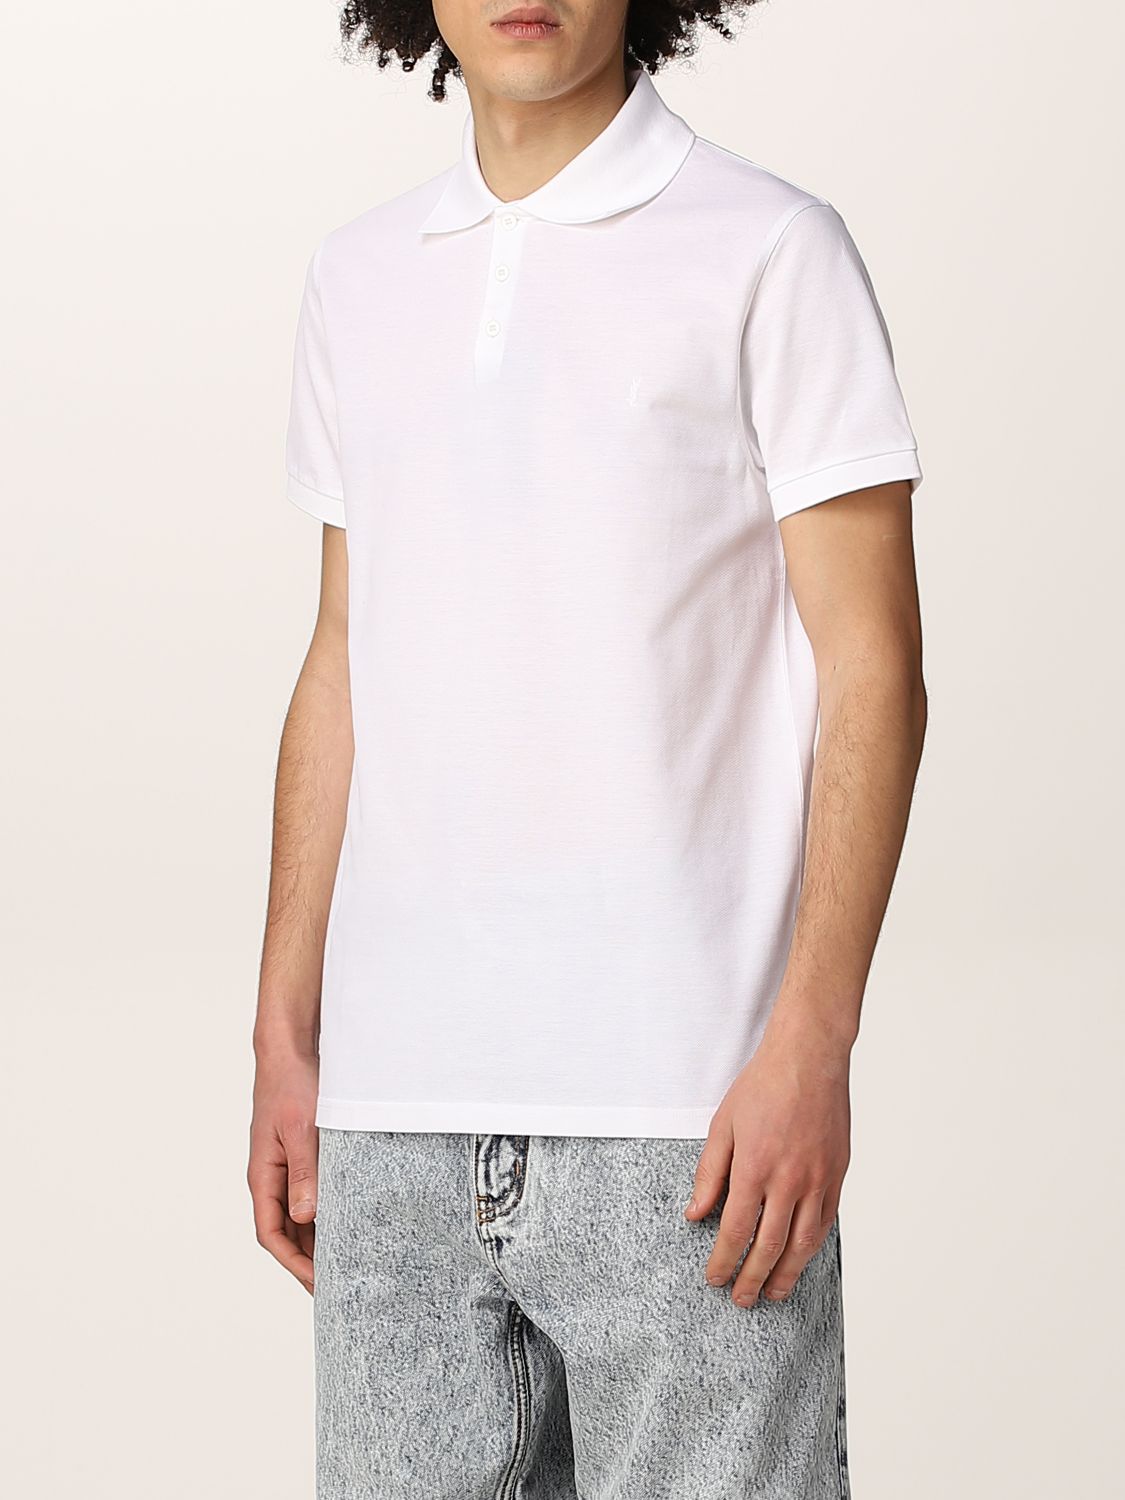 Polo shirt Saint Laurent: Saint Laurent piqué cotton basic polo t-shirt white 4